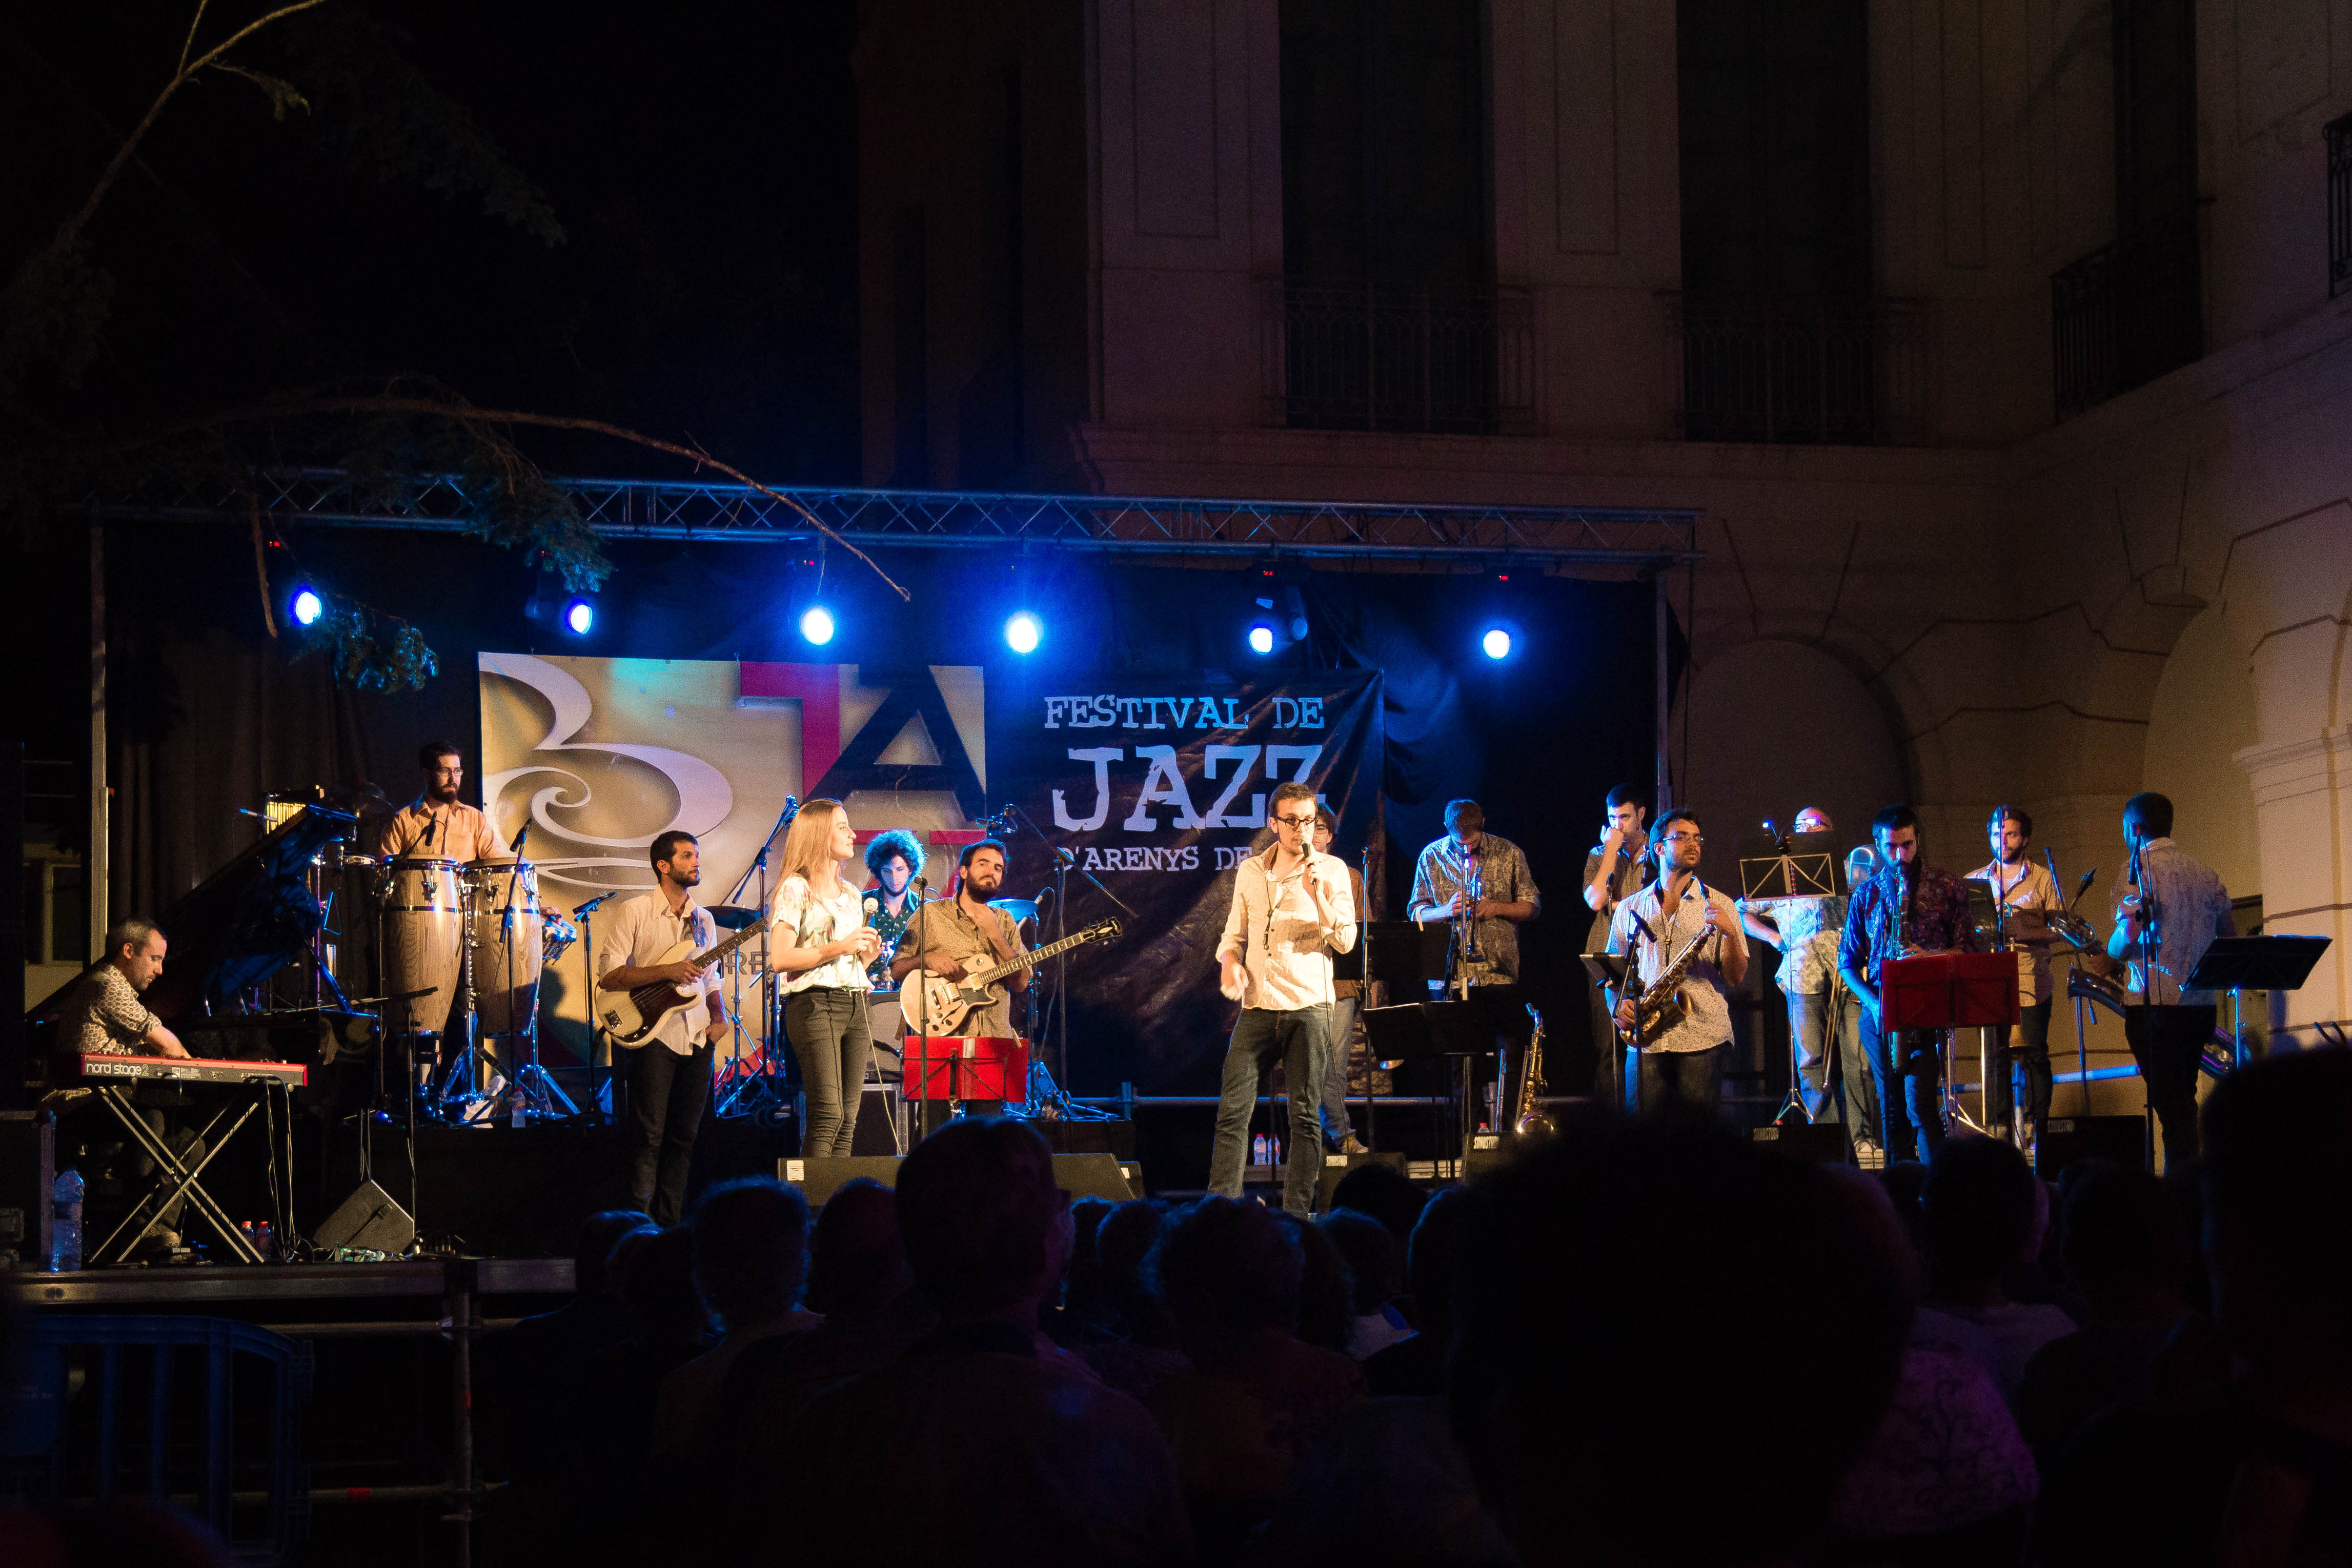 Imatges del 24 Festival de Jazz d'Arenys de Mar - 2015 - Foto 86499811